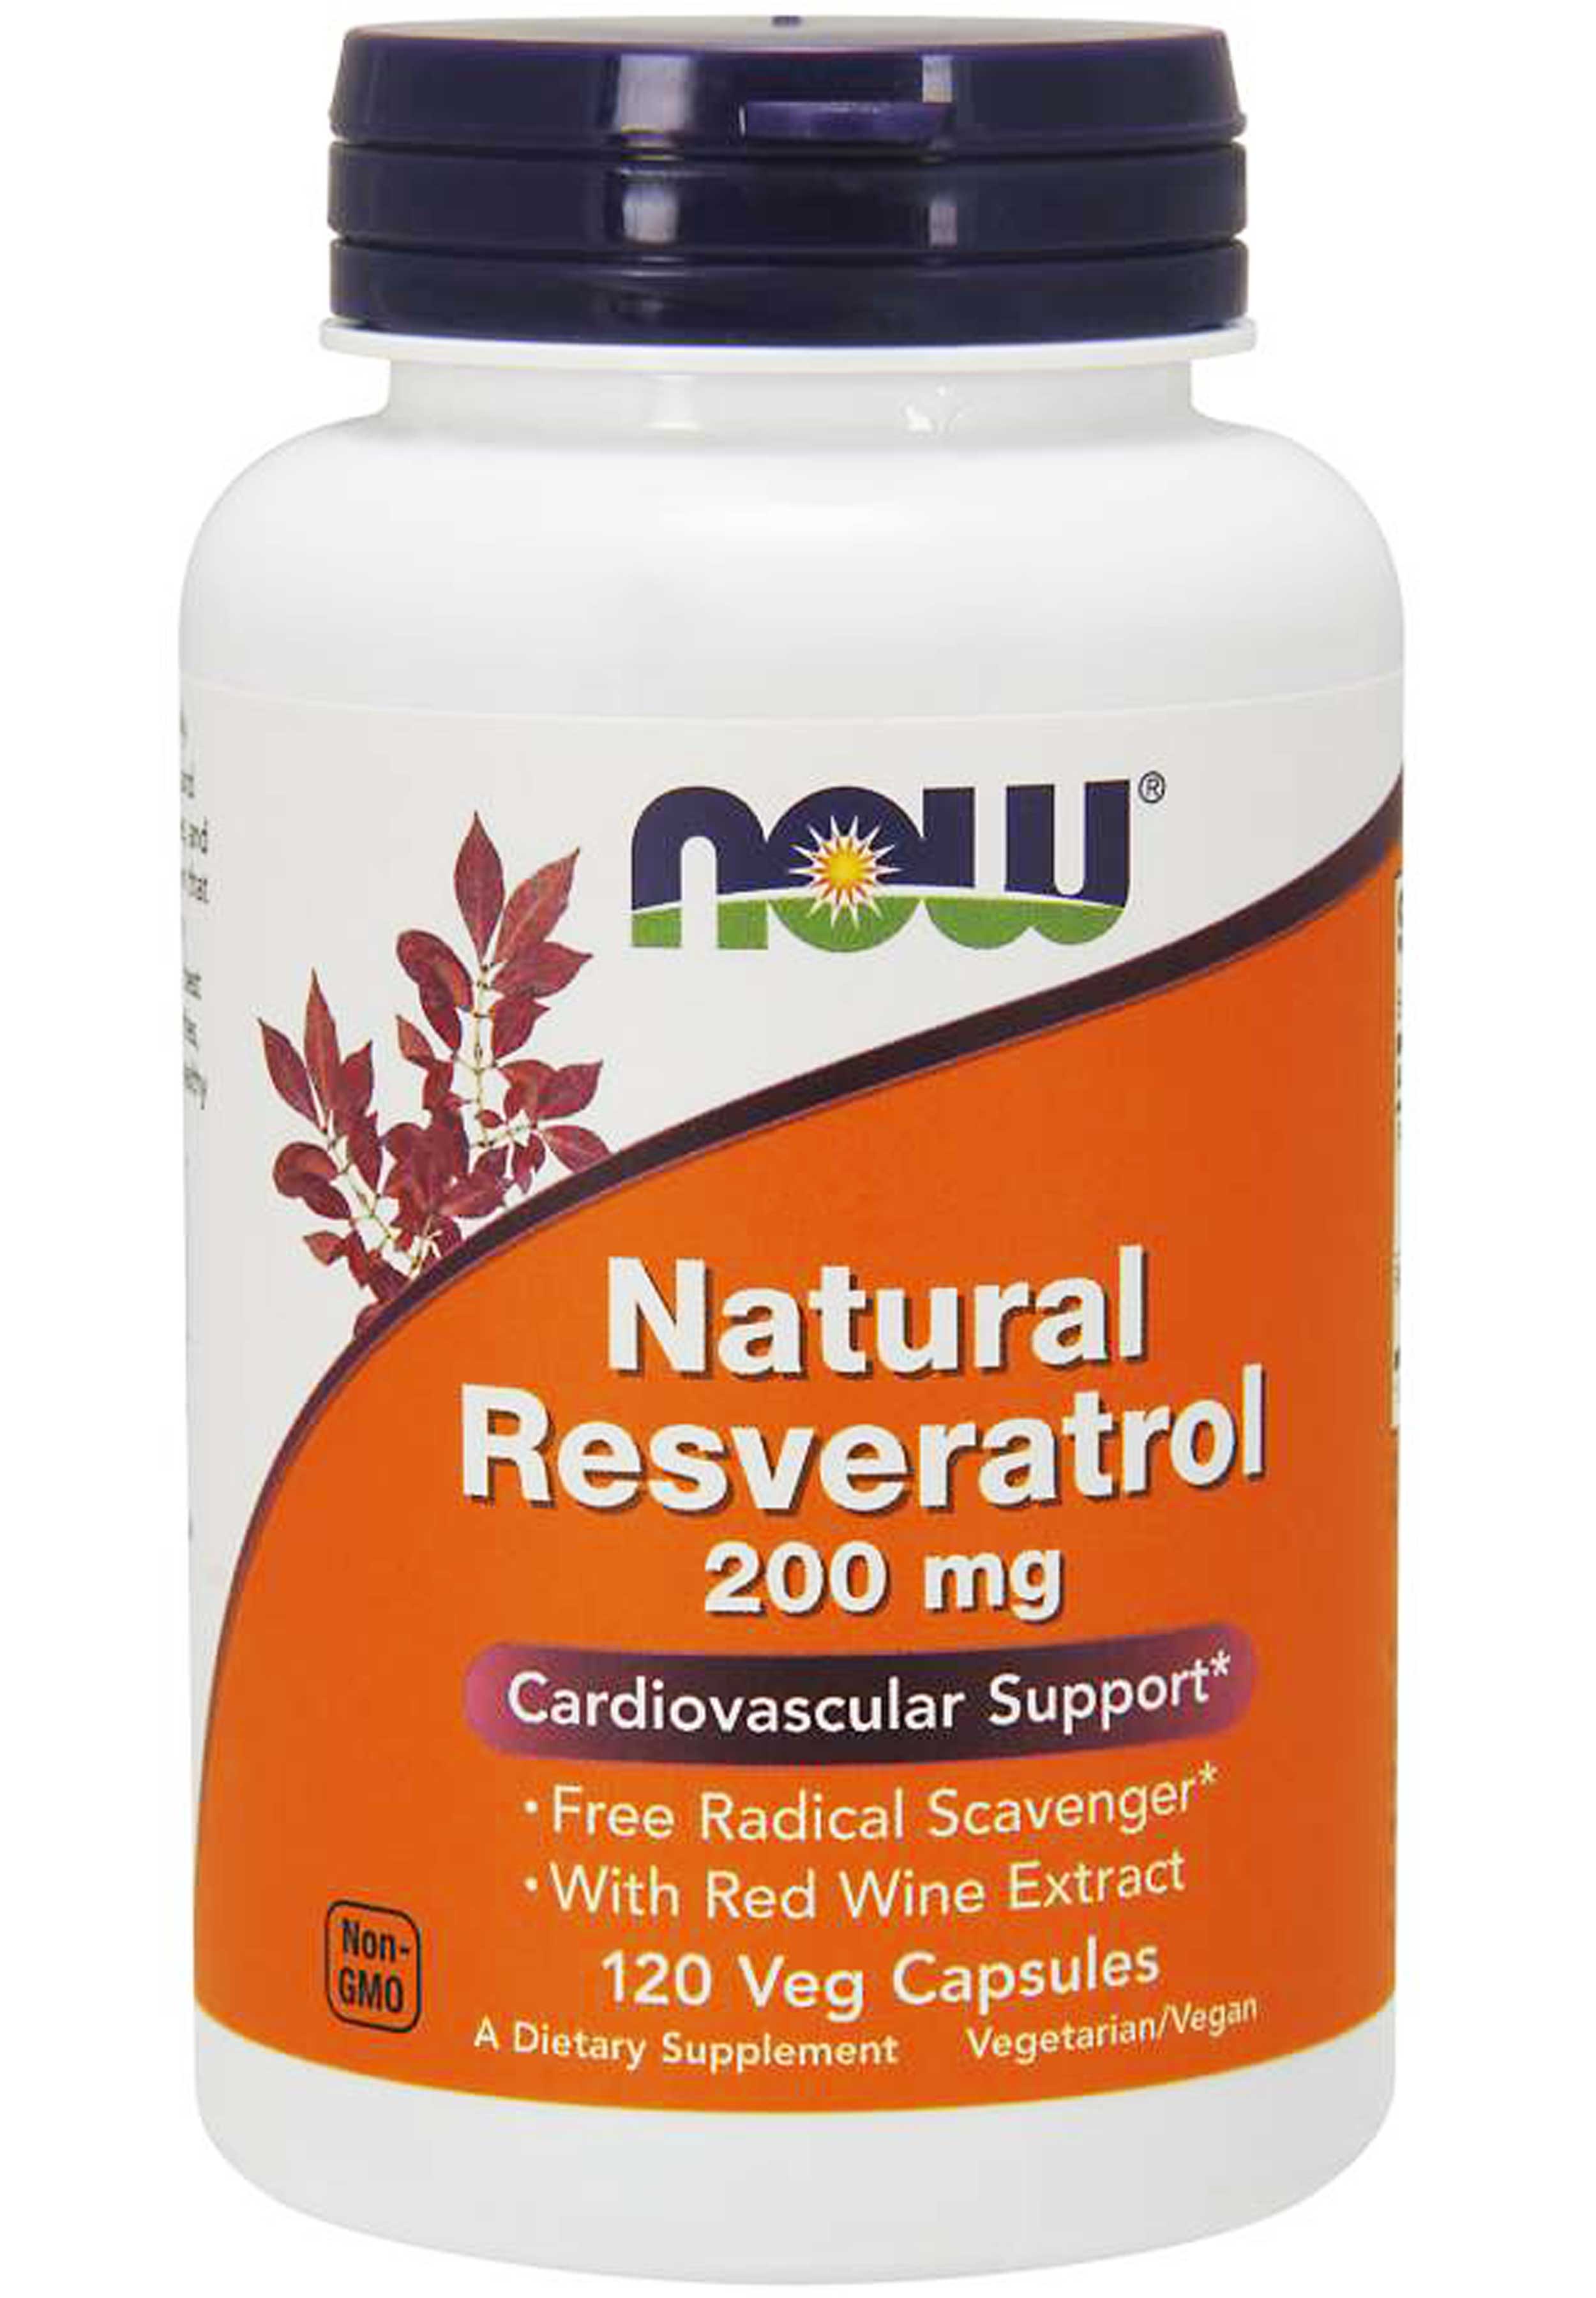 NOW Natural Resveratrol 200 mg